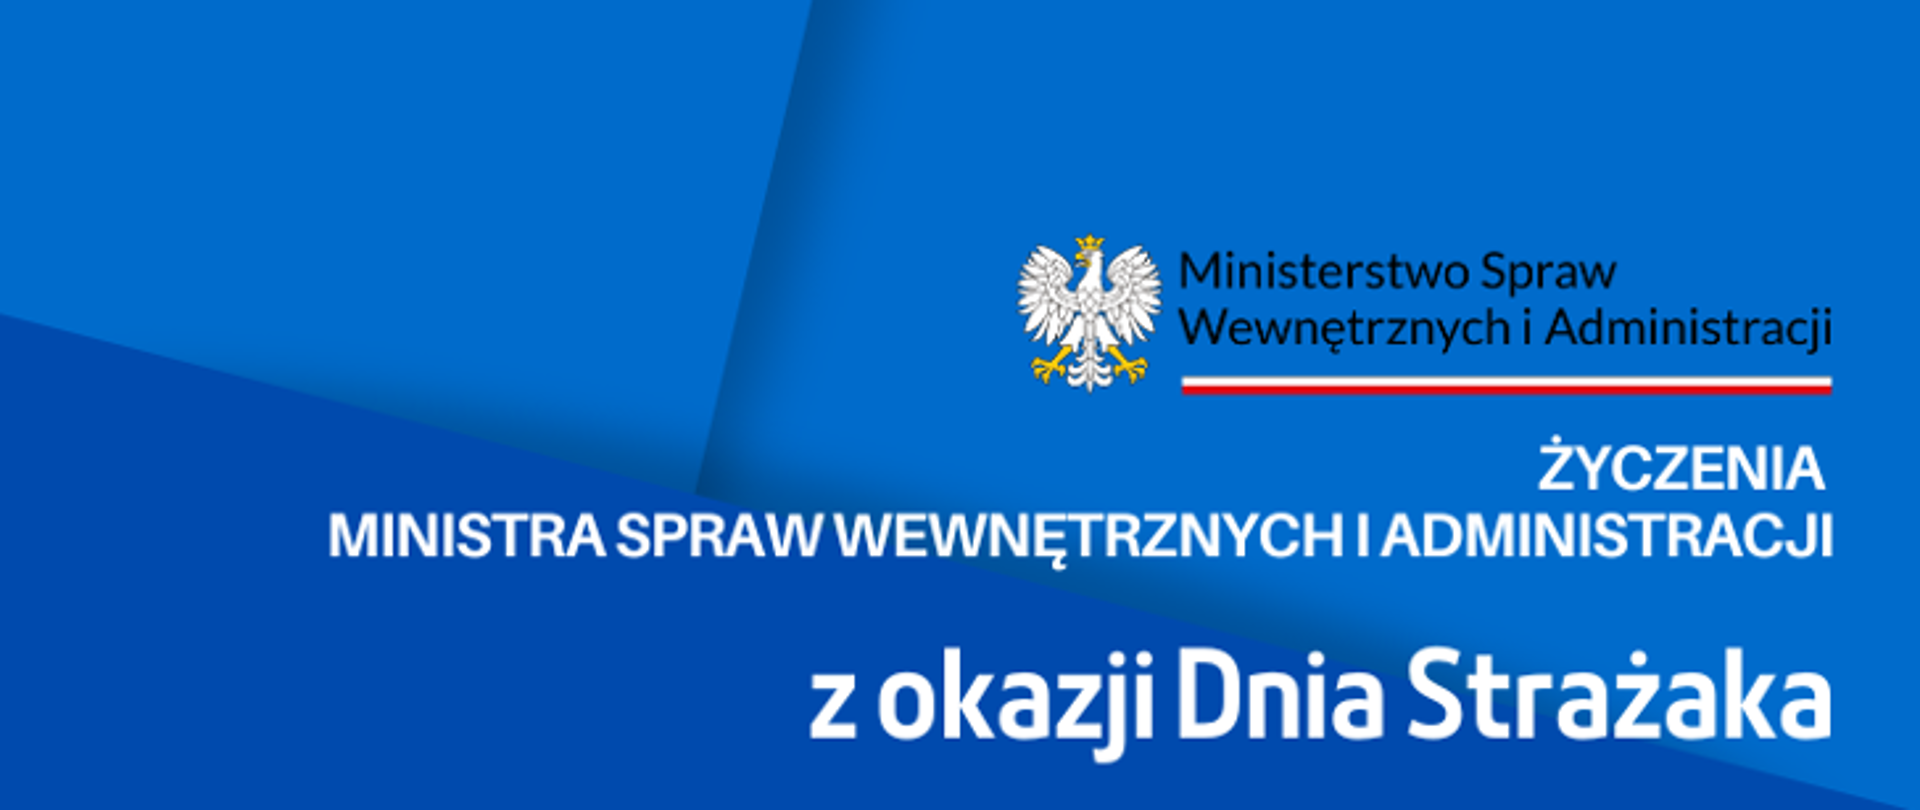 Życzenia Ministra Spraw Wewnętrznych i Administracji z okazji Dnia Strażaka 2023 logo